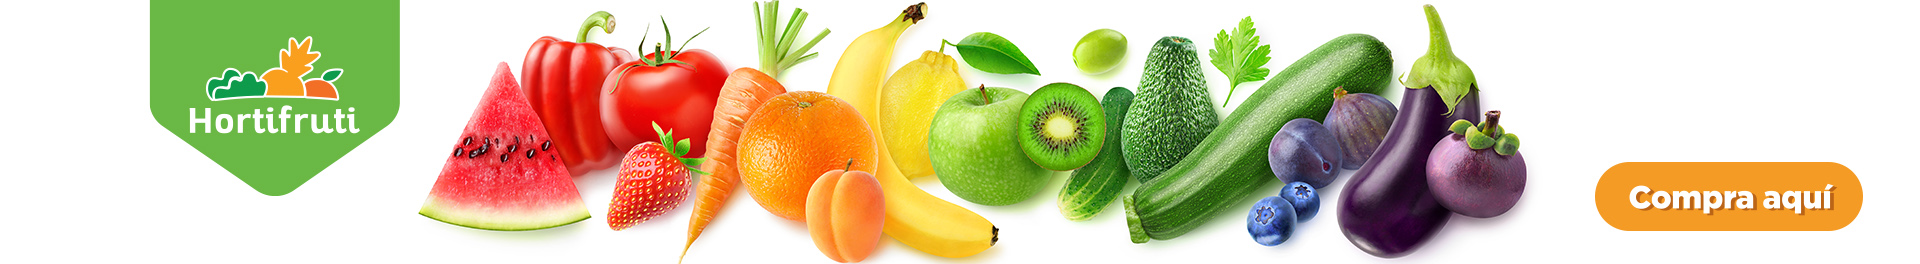 Frutas y Verduras Hortifruti